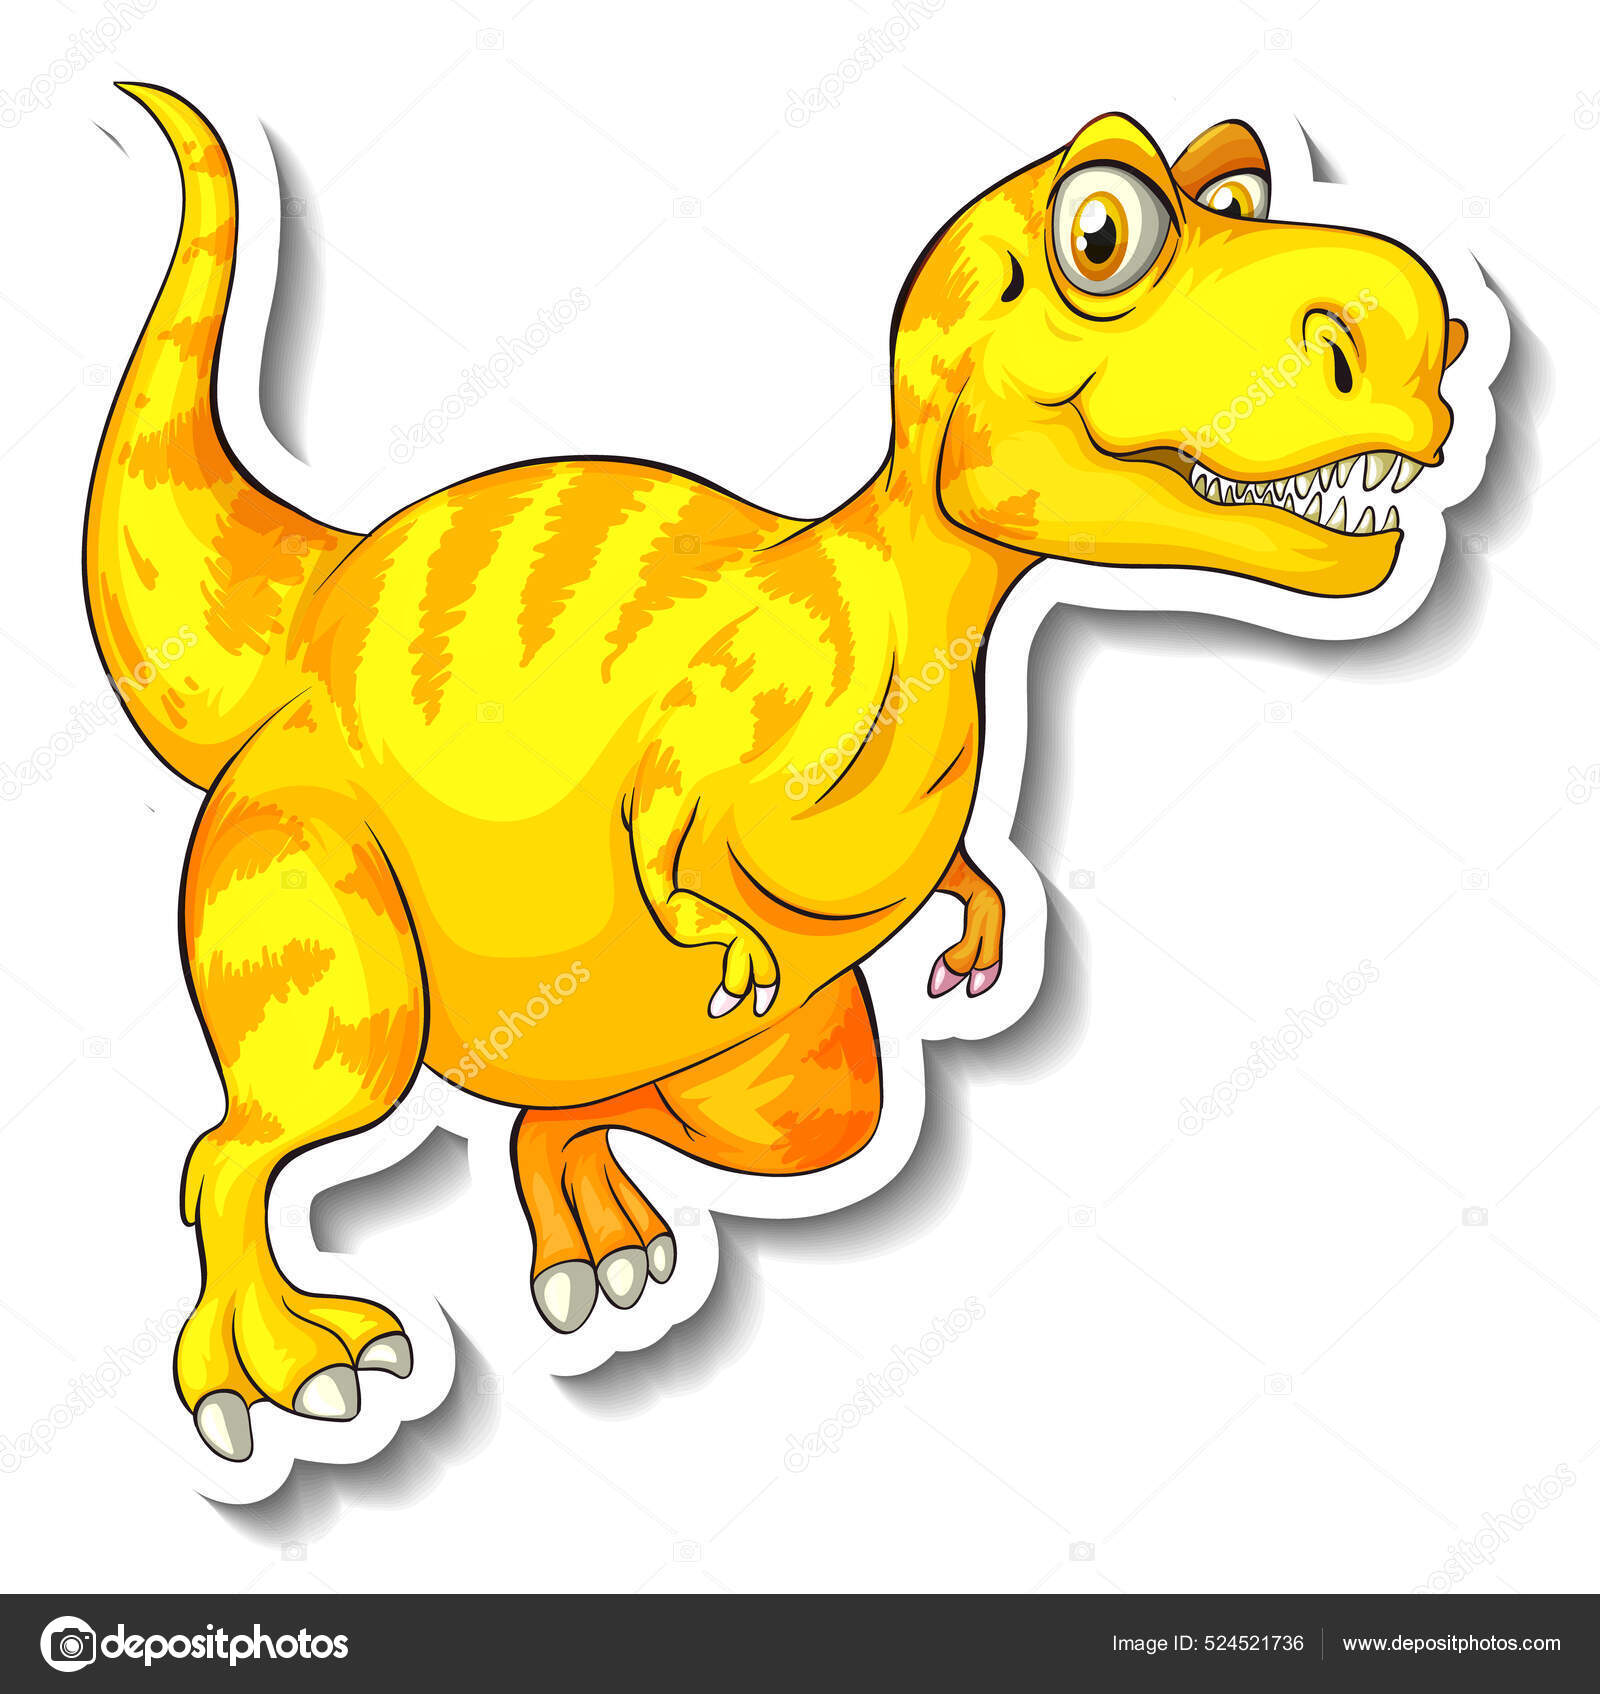 Tyrannosaurus Dinossauro Desenho Animado Personagem Etiqueta Ilustração  imagem vetorial de interactimages© 535250650